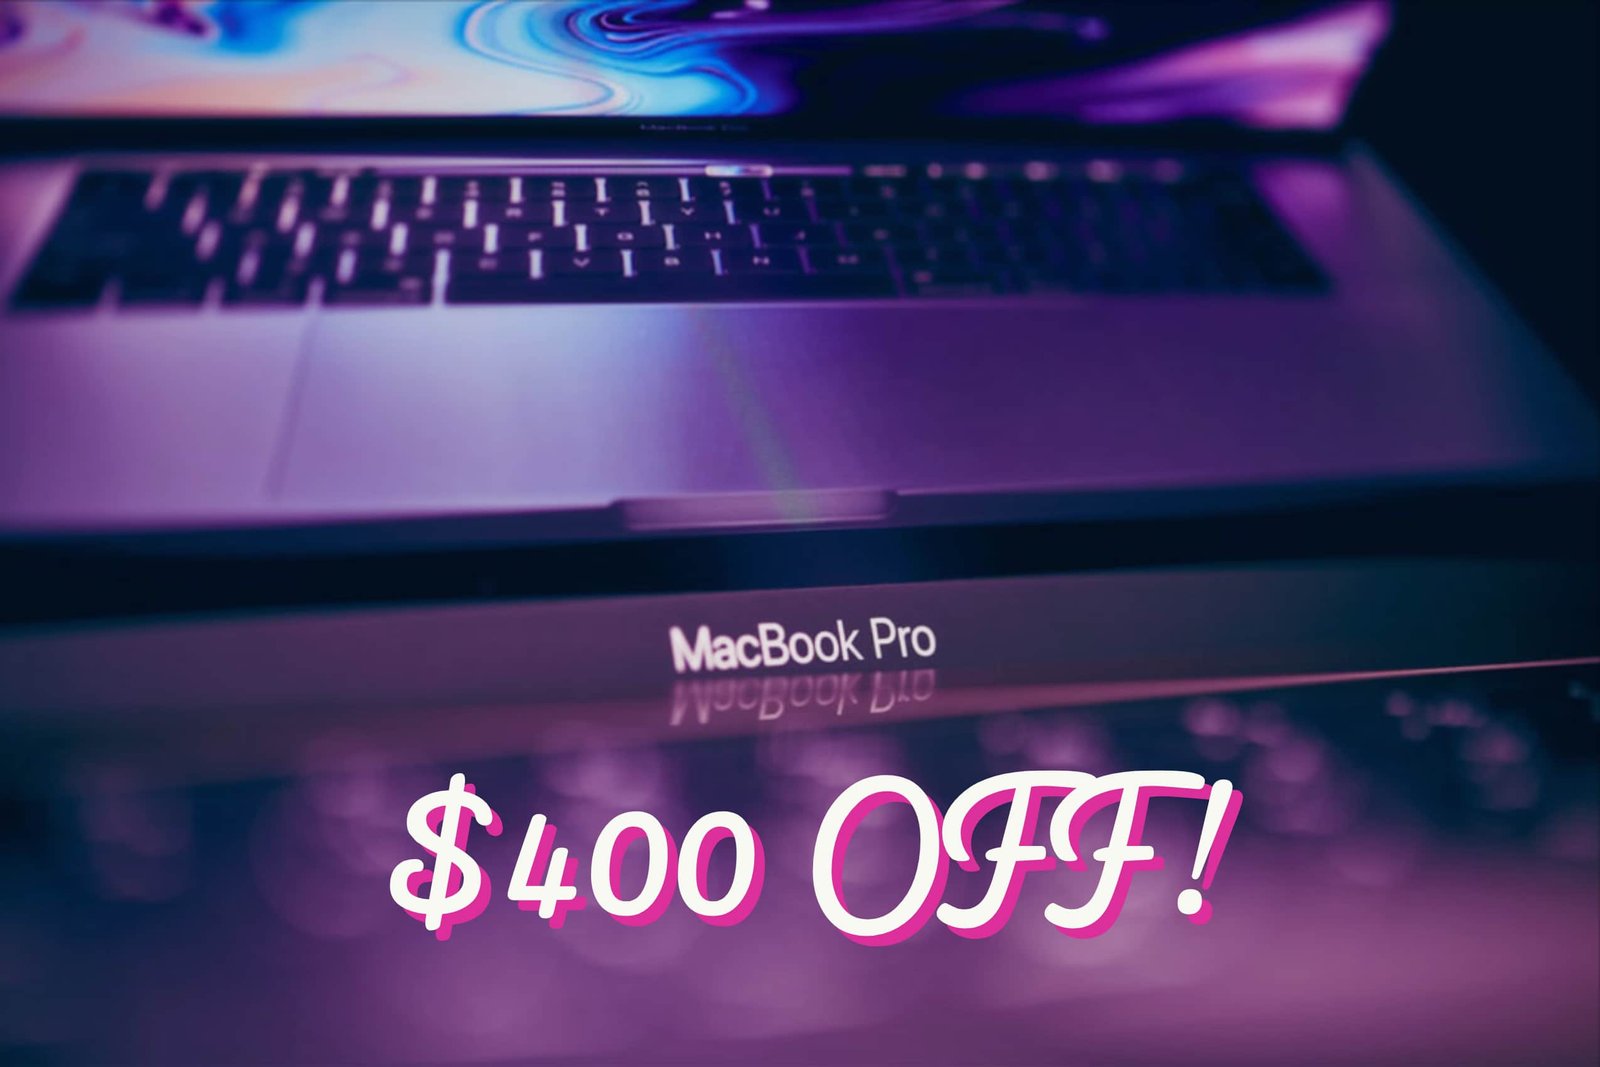 macbook pro 15 inch deals